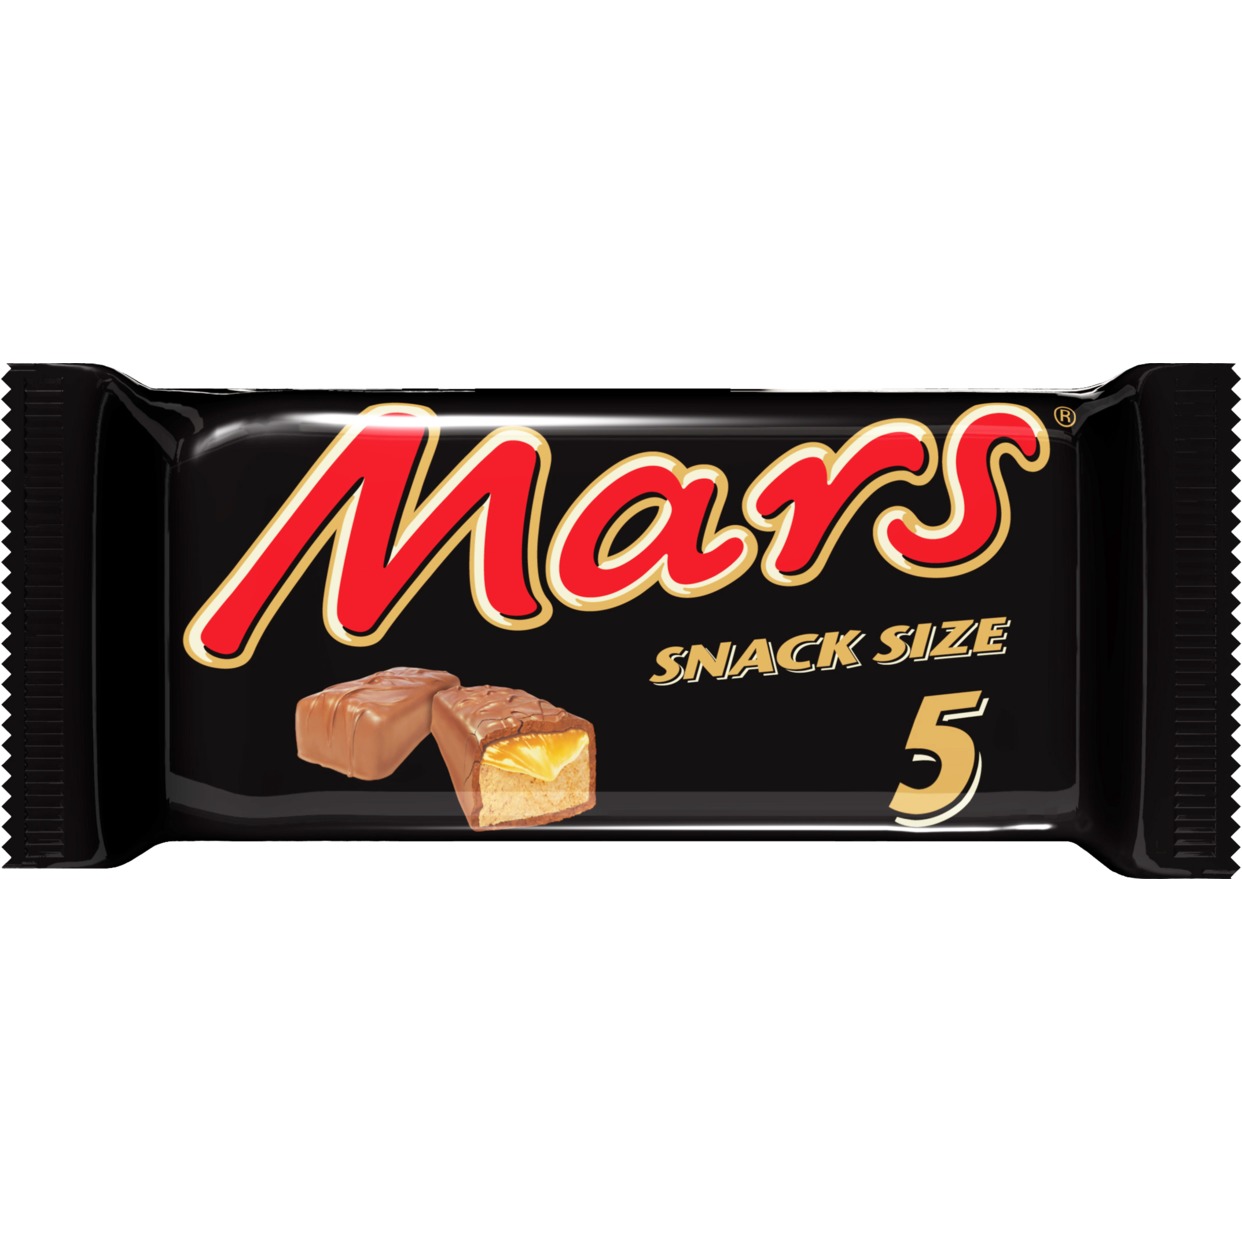 Шоколадный батончик Mars, 202.5 г по акции в Пятерочке